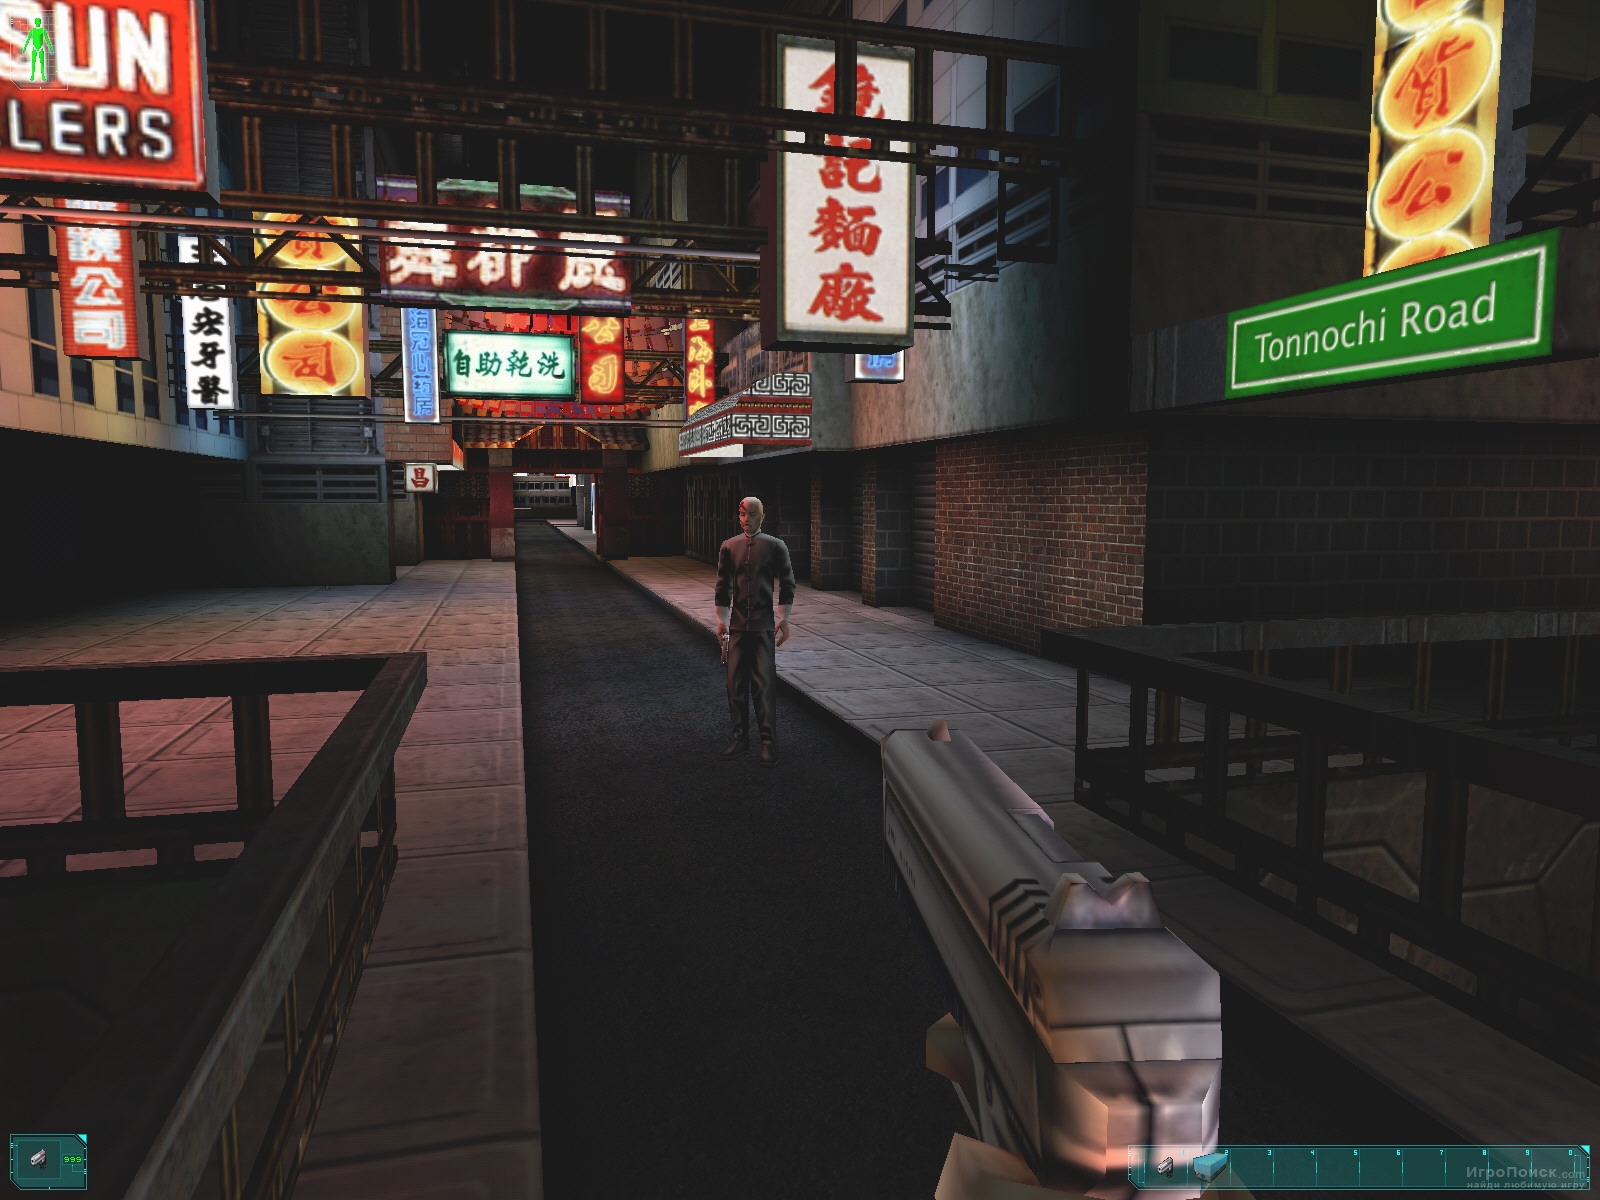 Скриншот к игре Deus Ex